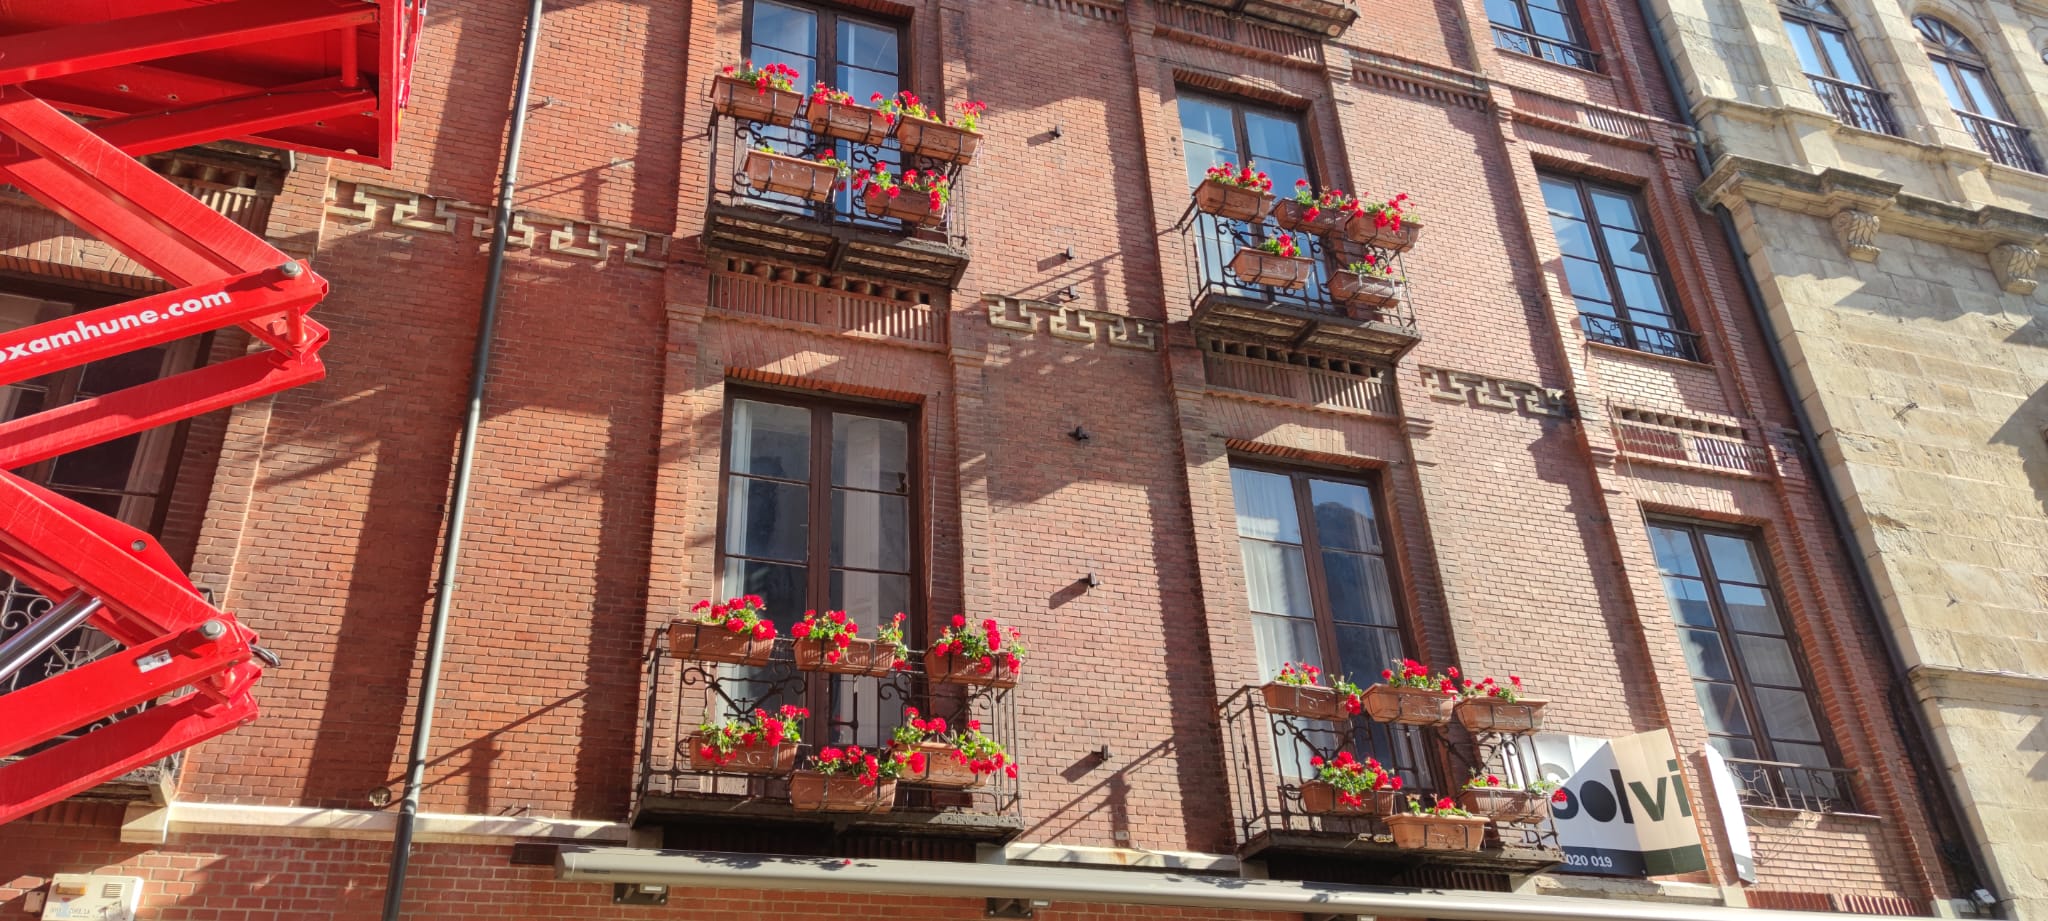 El Ayuntamiento de León acomete la renovación de las flores y maceteros que decoran los balcones de la emblemática vía | 1.400 jardineras de geráneos y ocho maceteros gigantes lucen los colores del verano en diferentes puntos de la ciudad